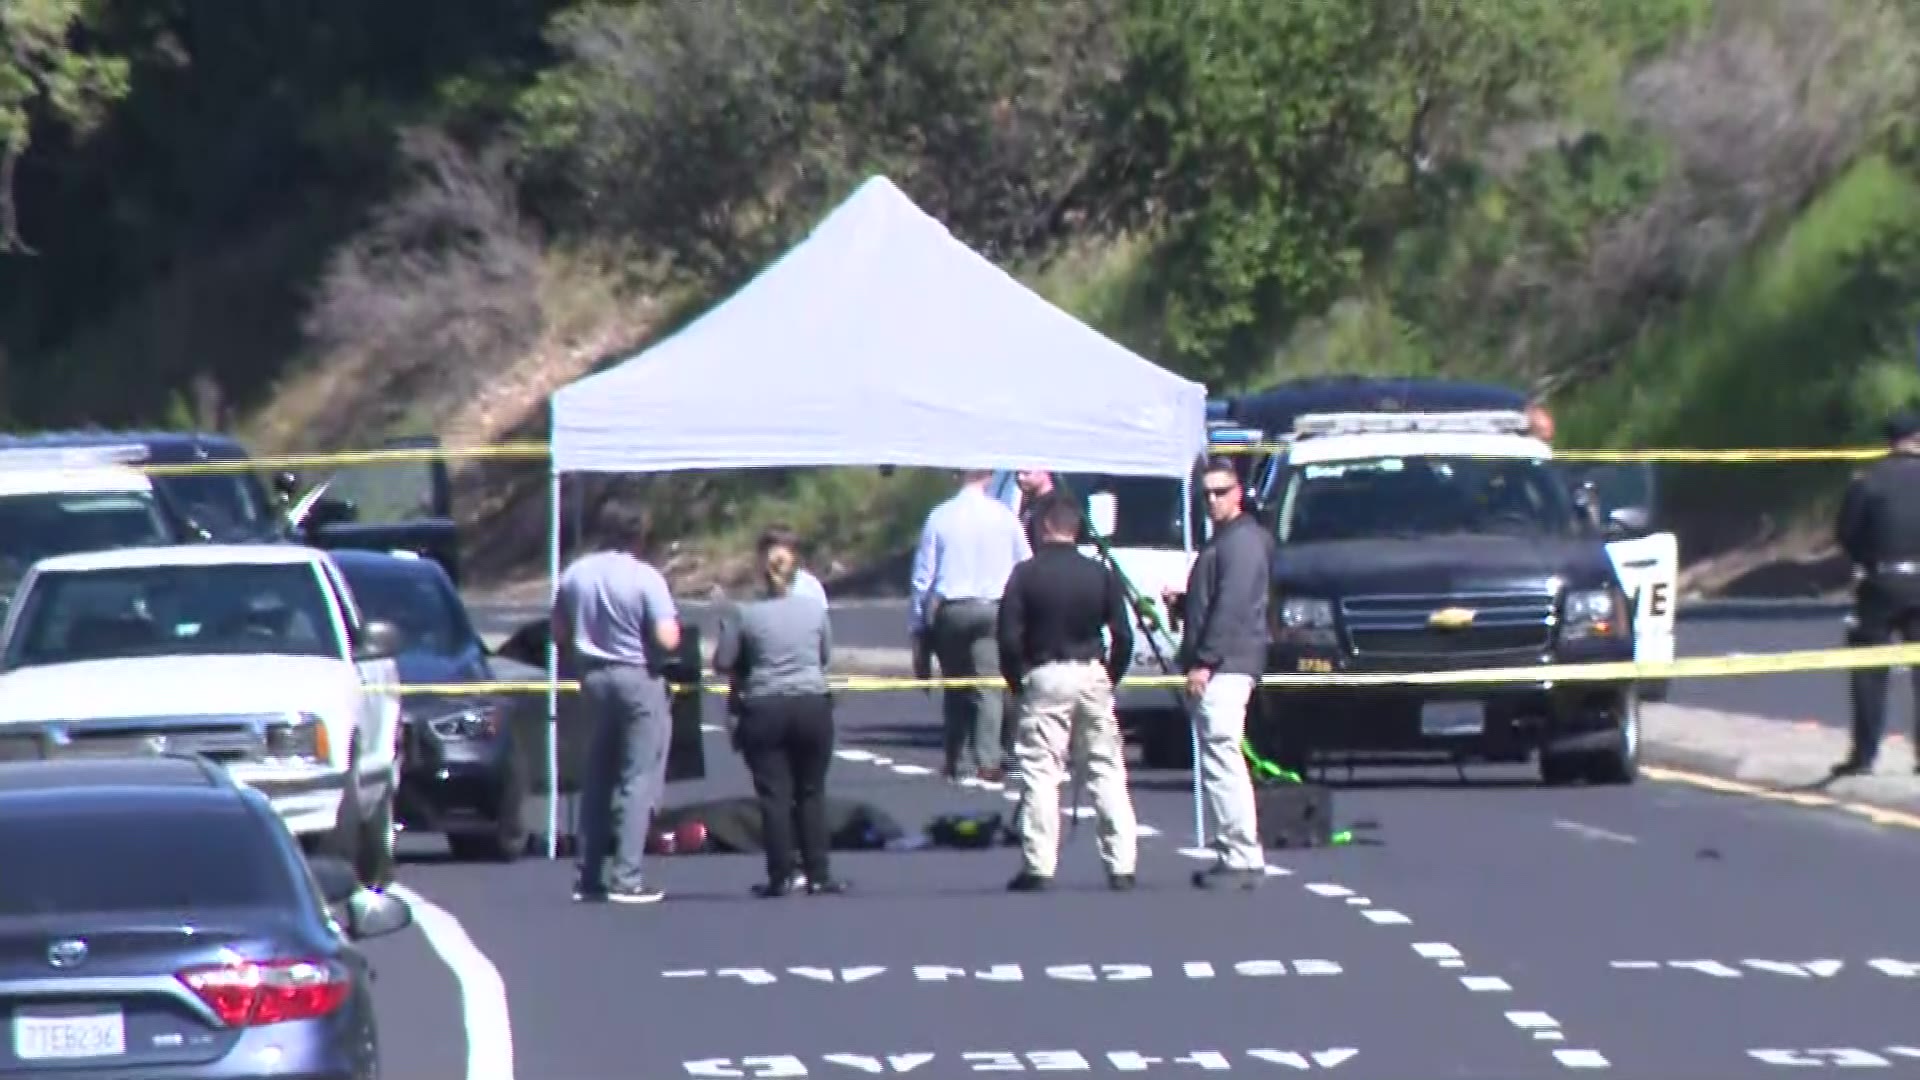 UPDATE: Victim Found Shot Dead in Car in Contra Costa Homicide Identified